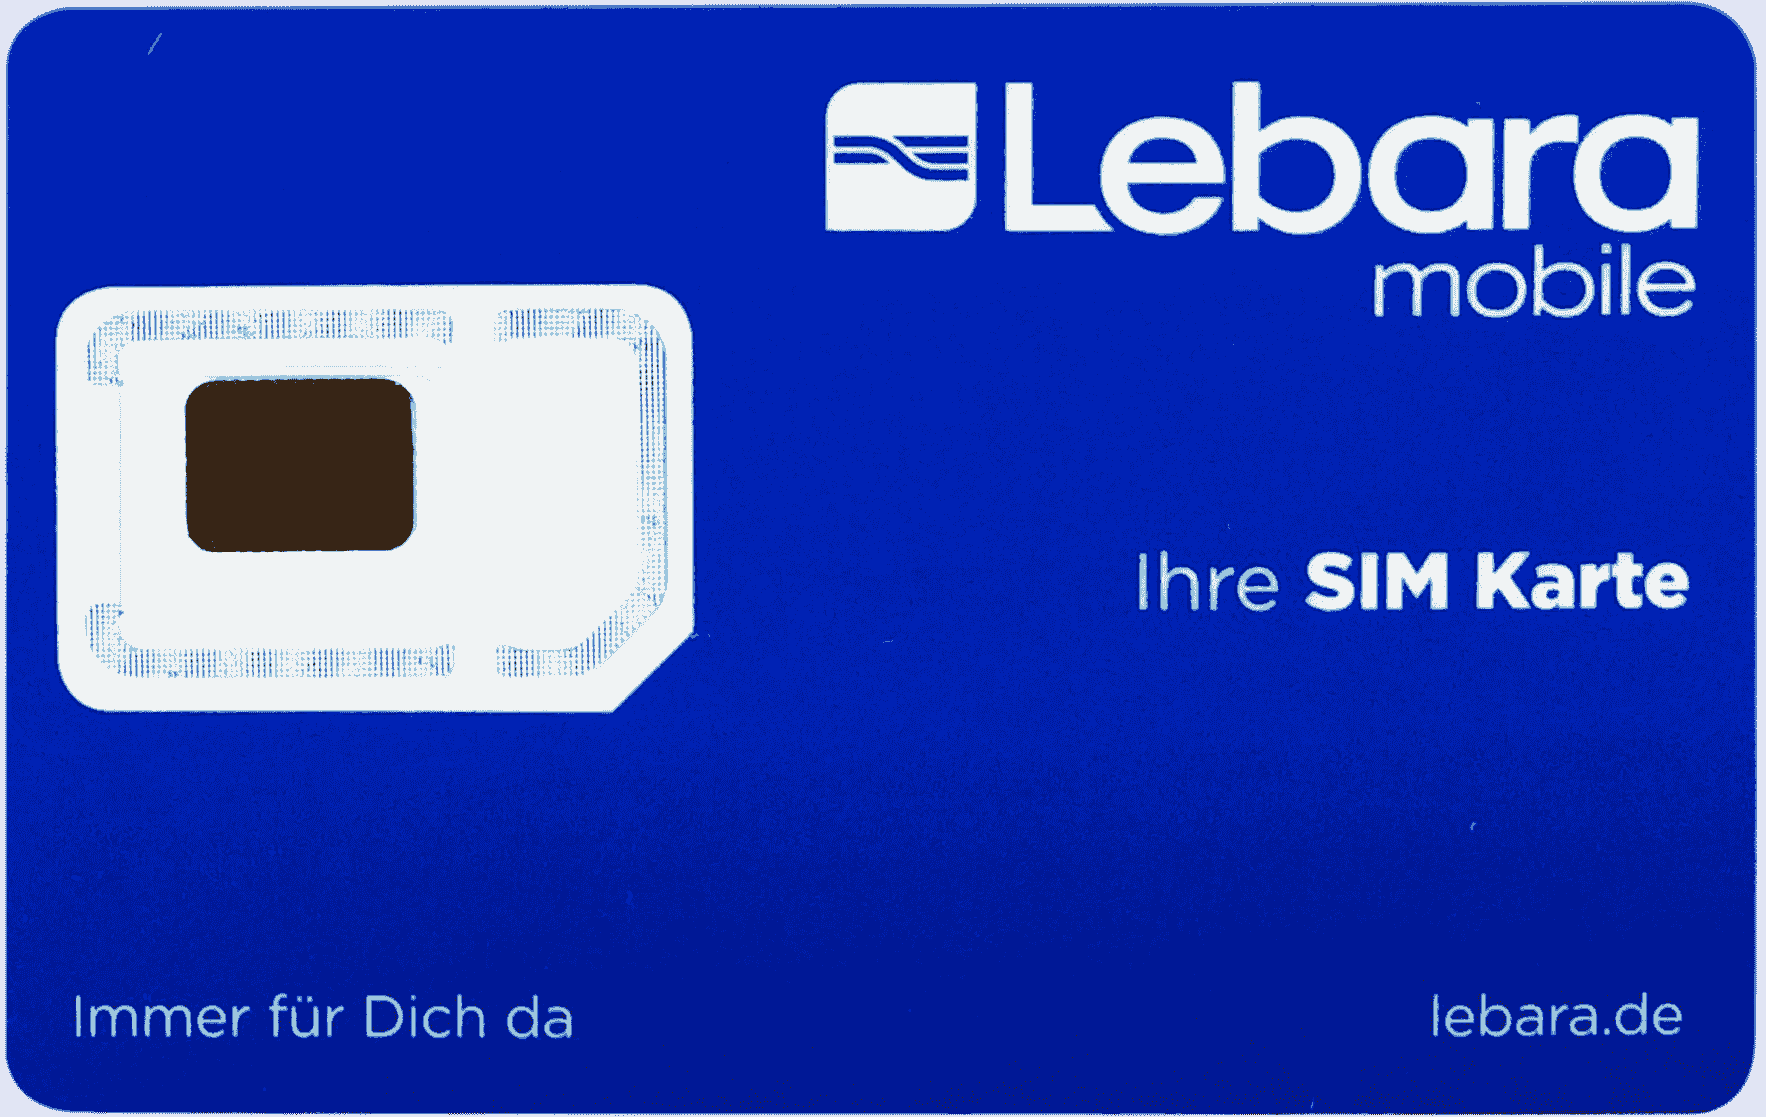 德國Lebara儲值€5 (需先擁有Lebara卡)